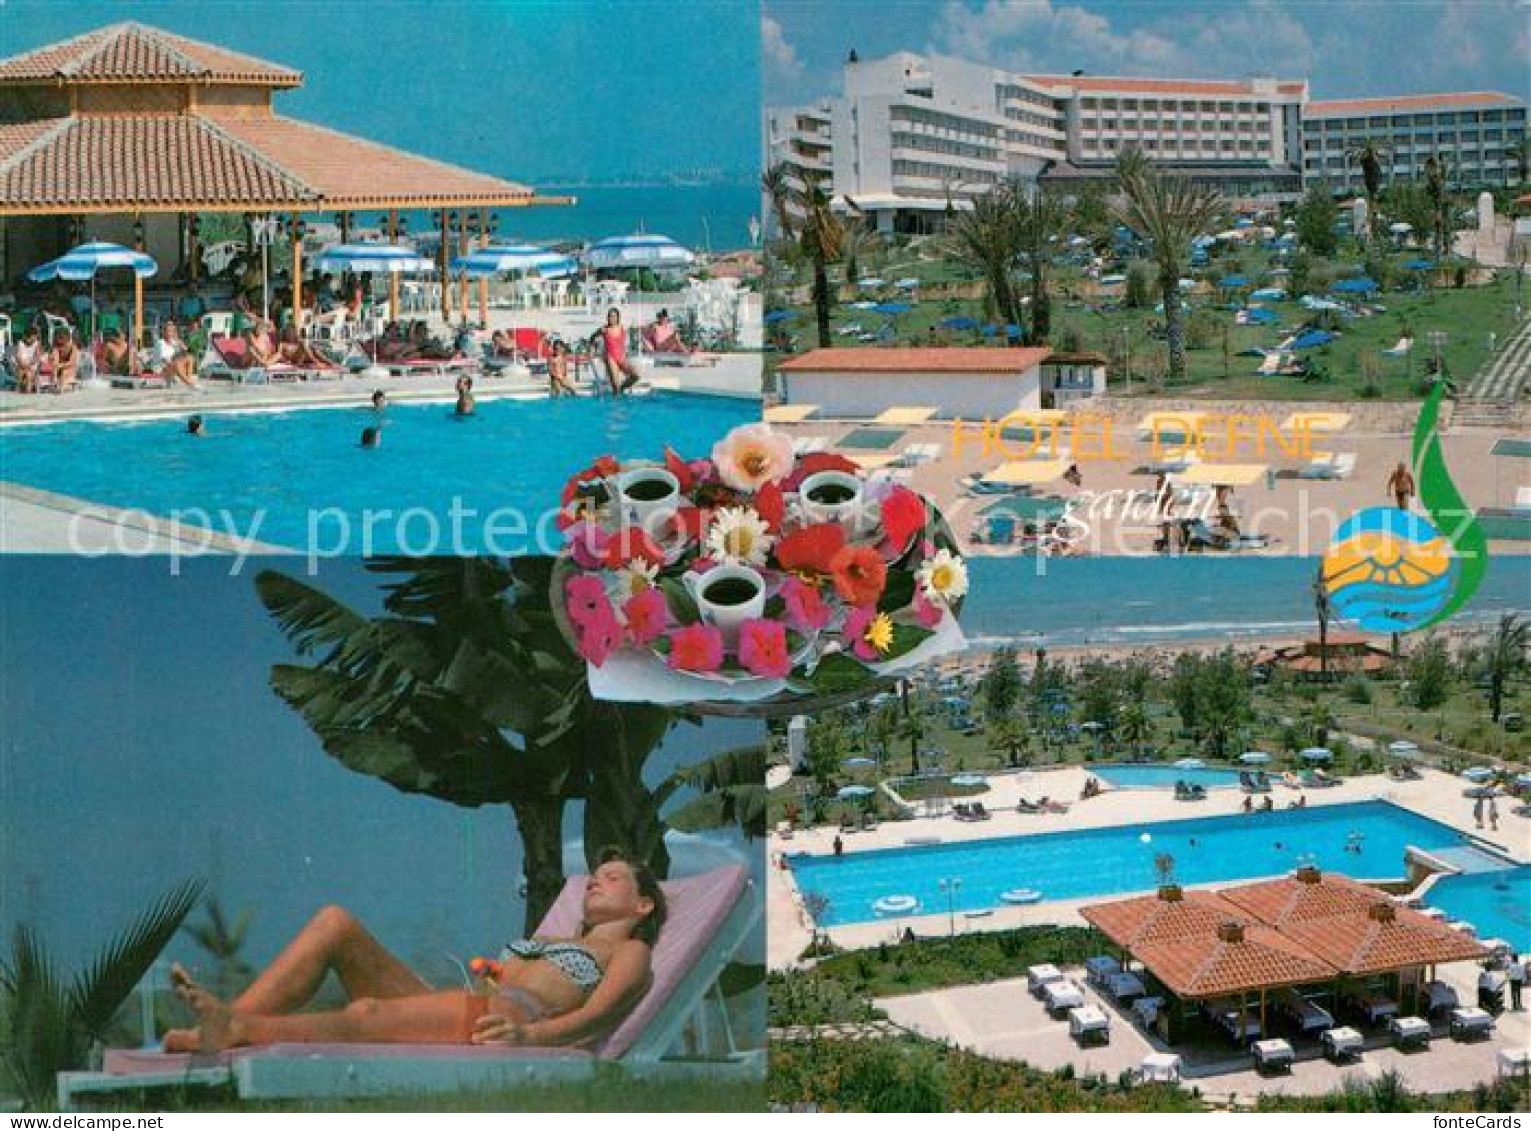 73092019 Side Antalya Hotel Defne Garden  - Turquie